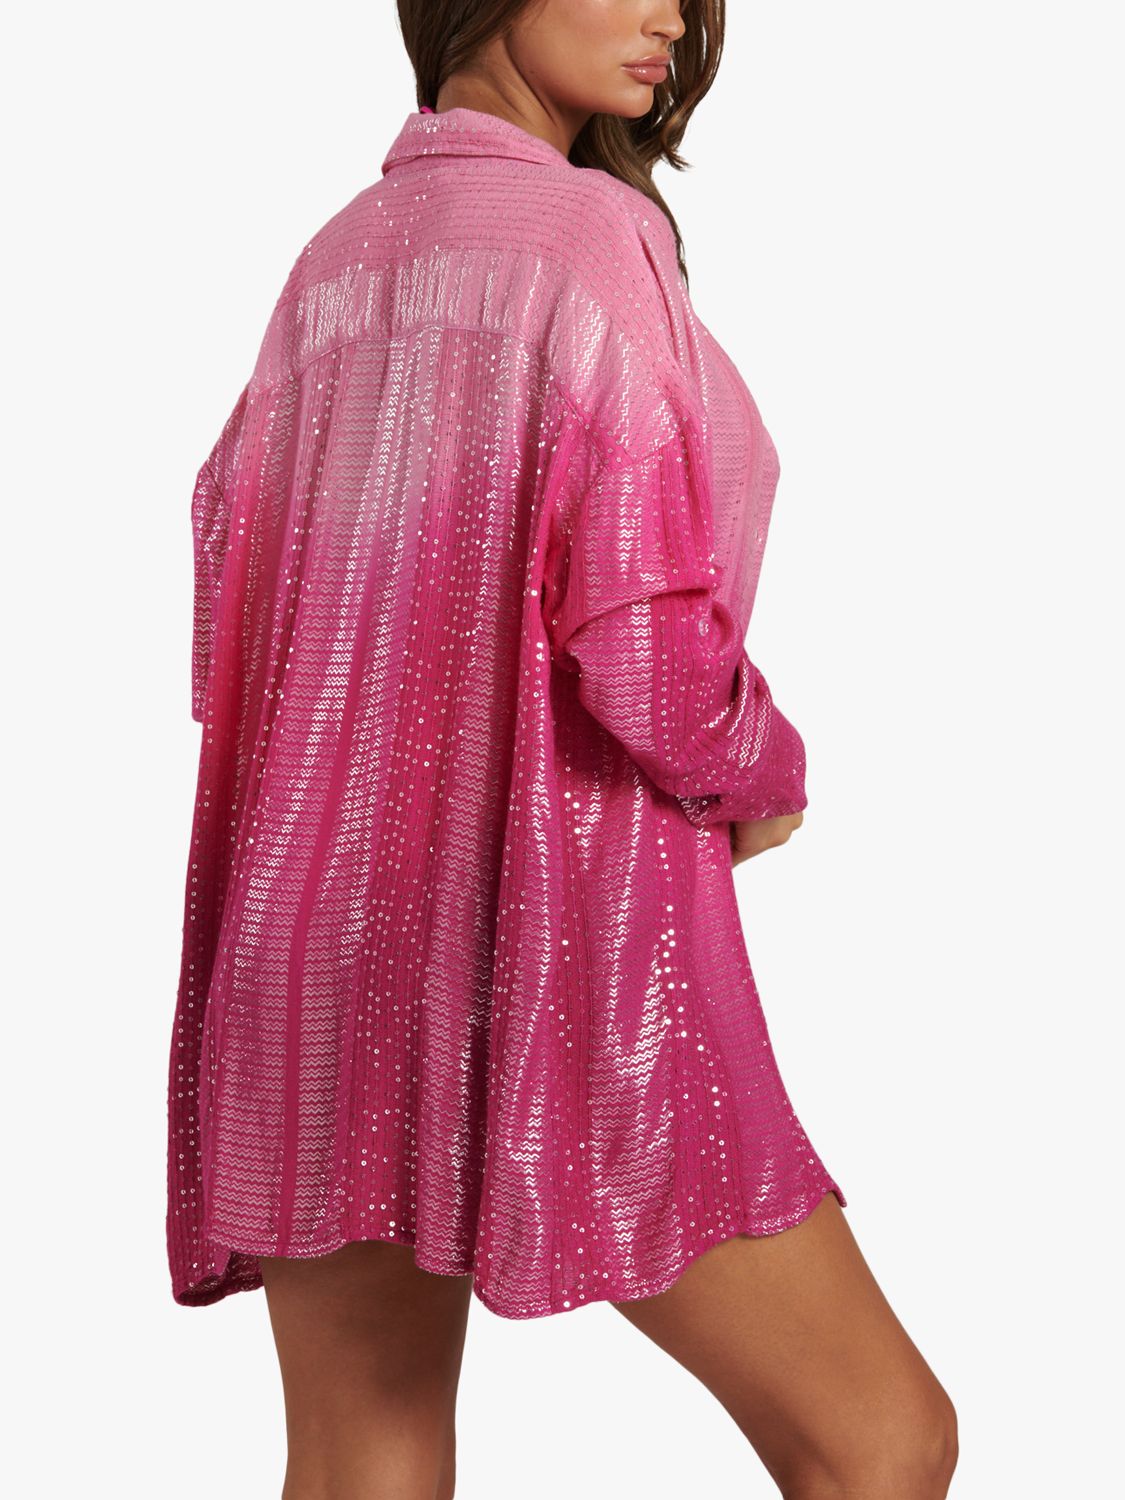 South Beach Ombre Metallic Shirt, Pink, 8